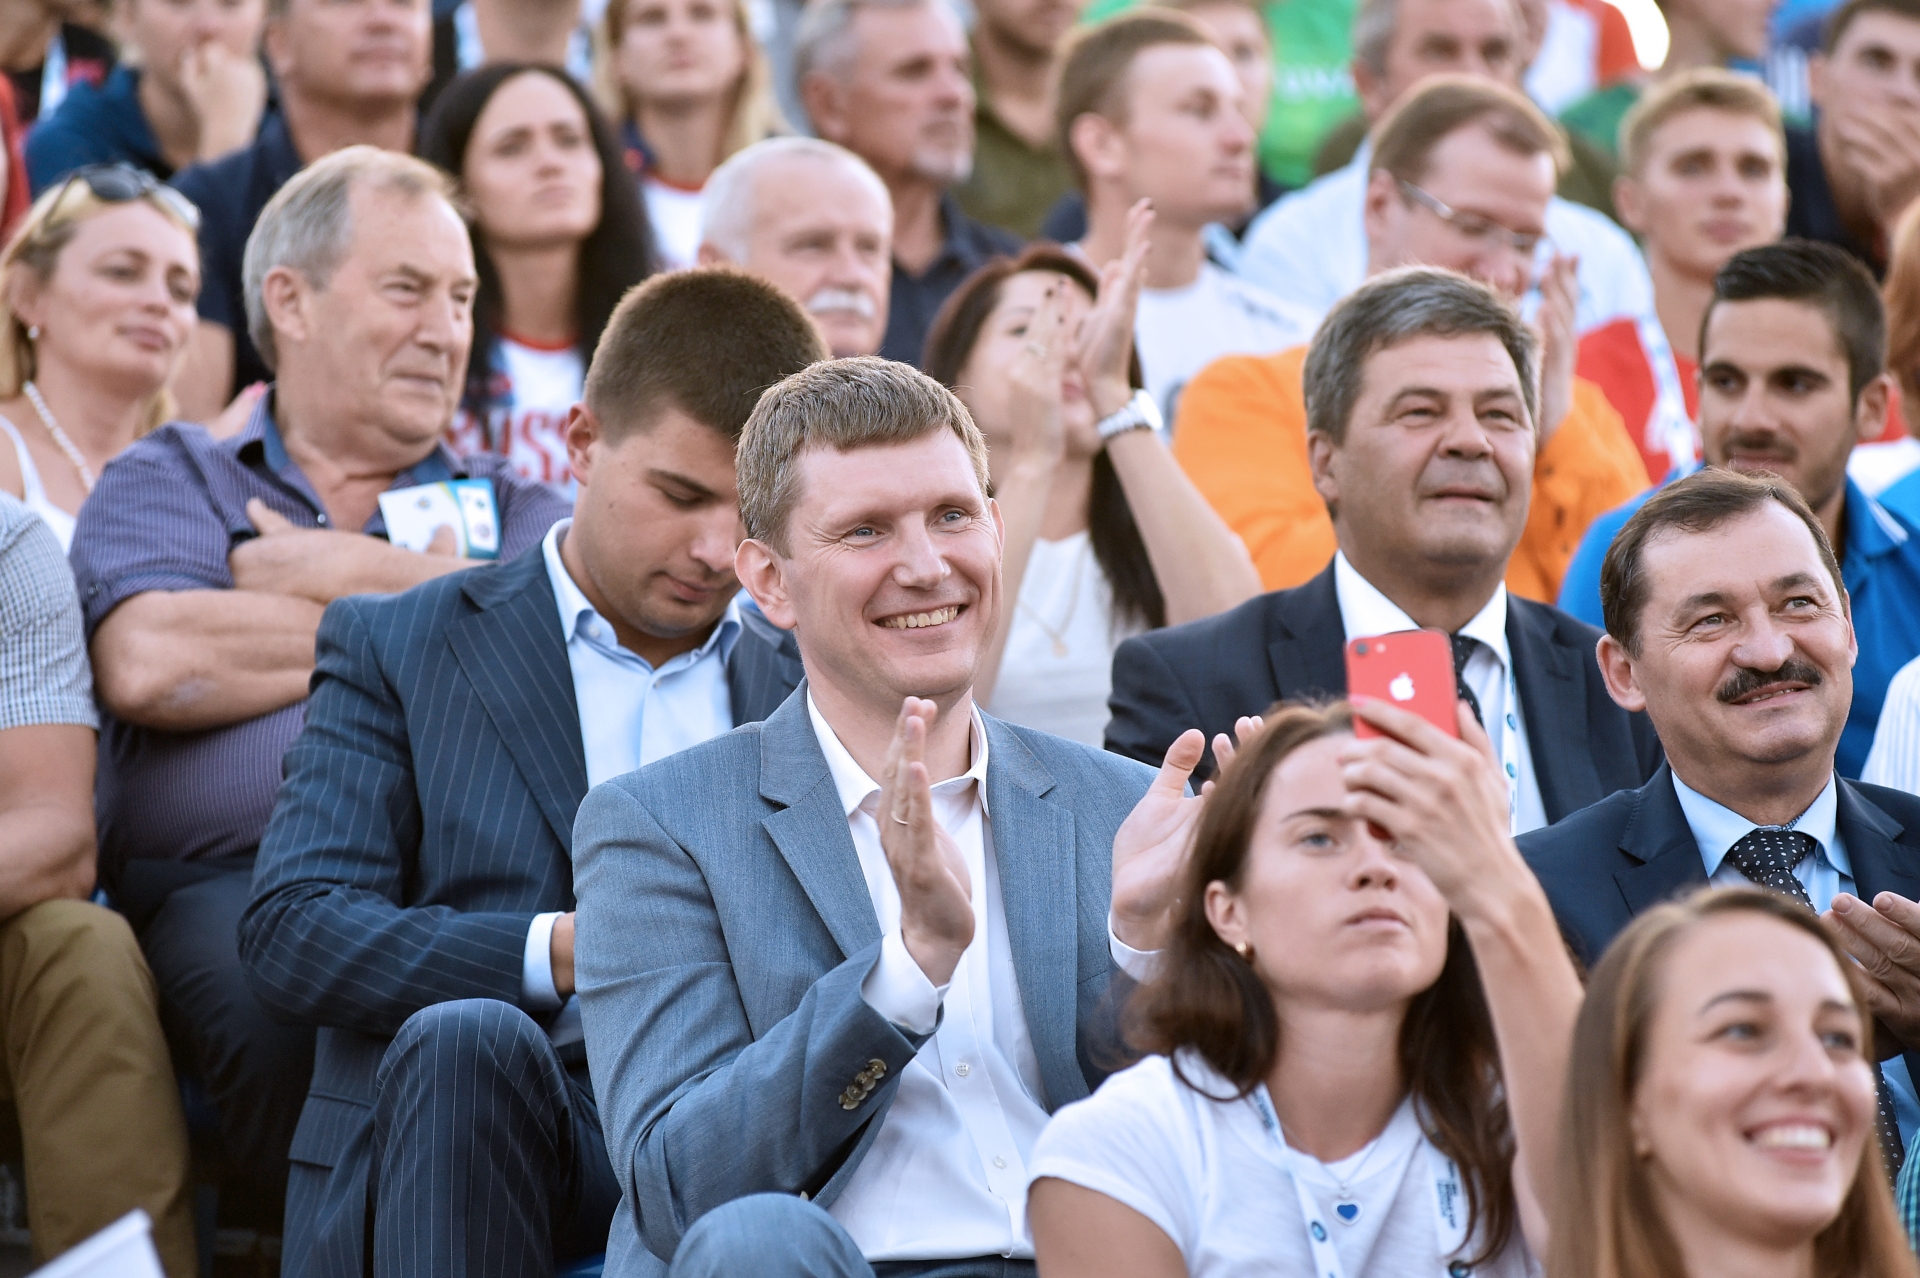 В Чайковском открыли чемпионат мира по летнему биатлону